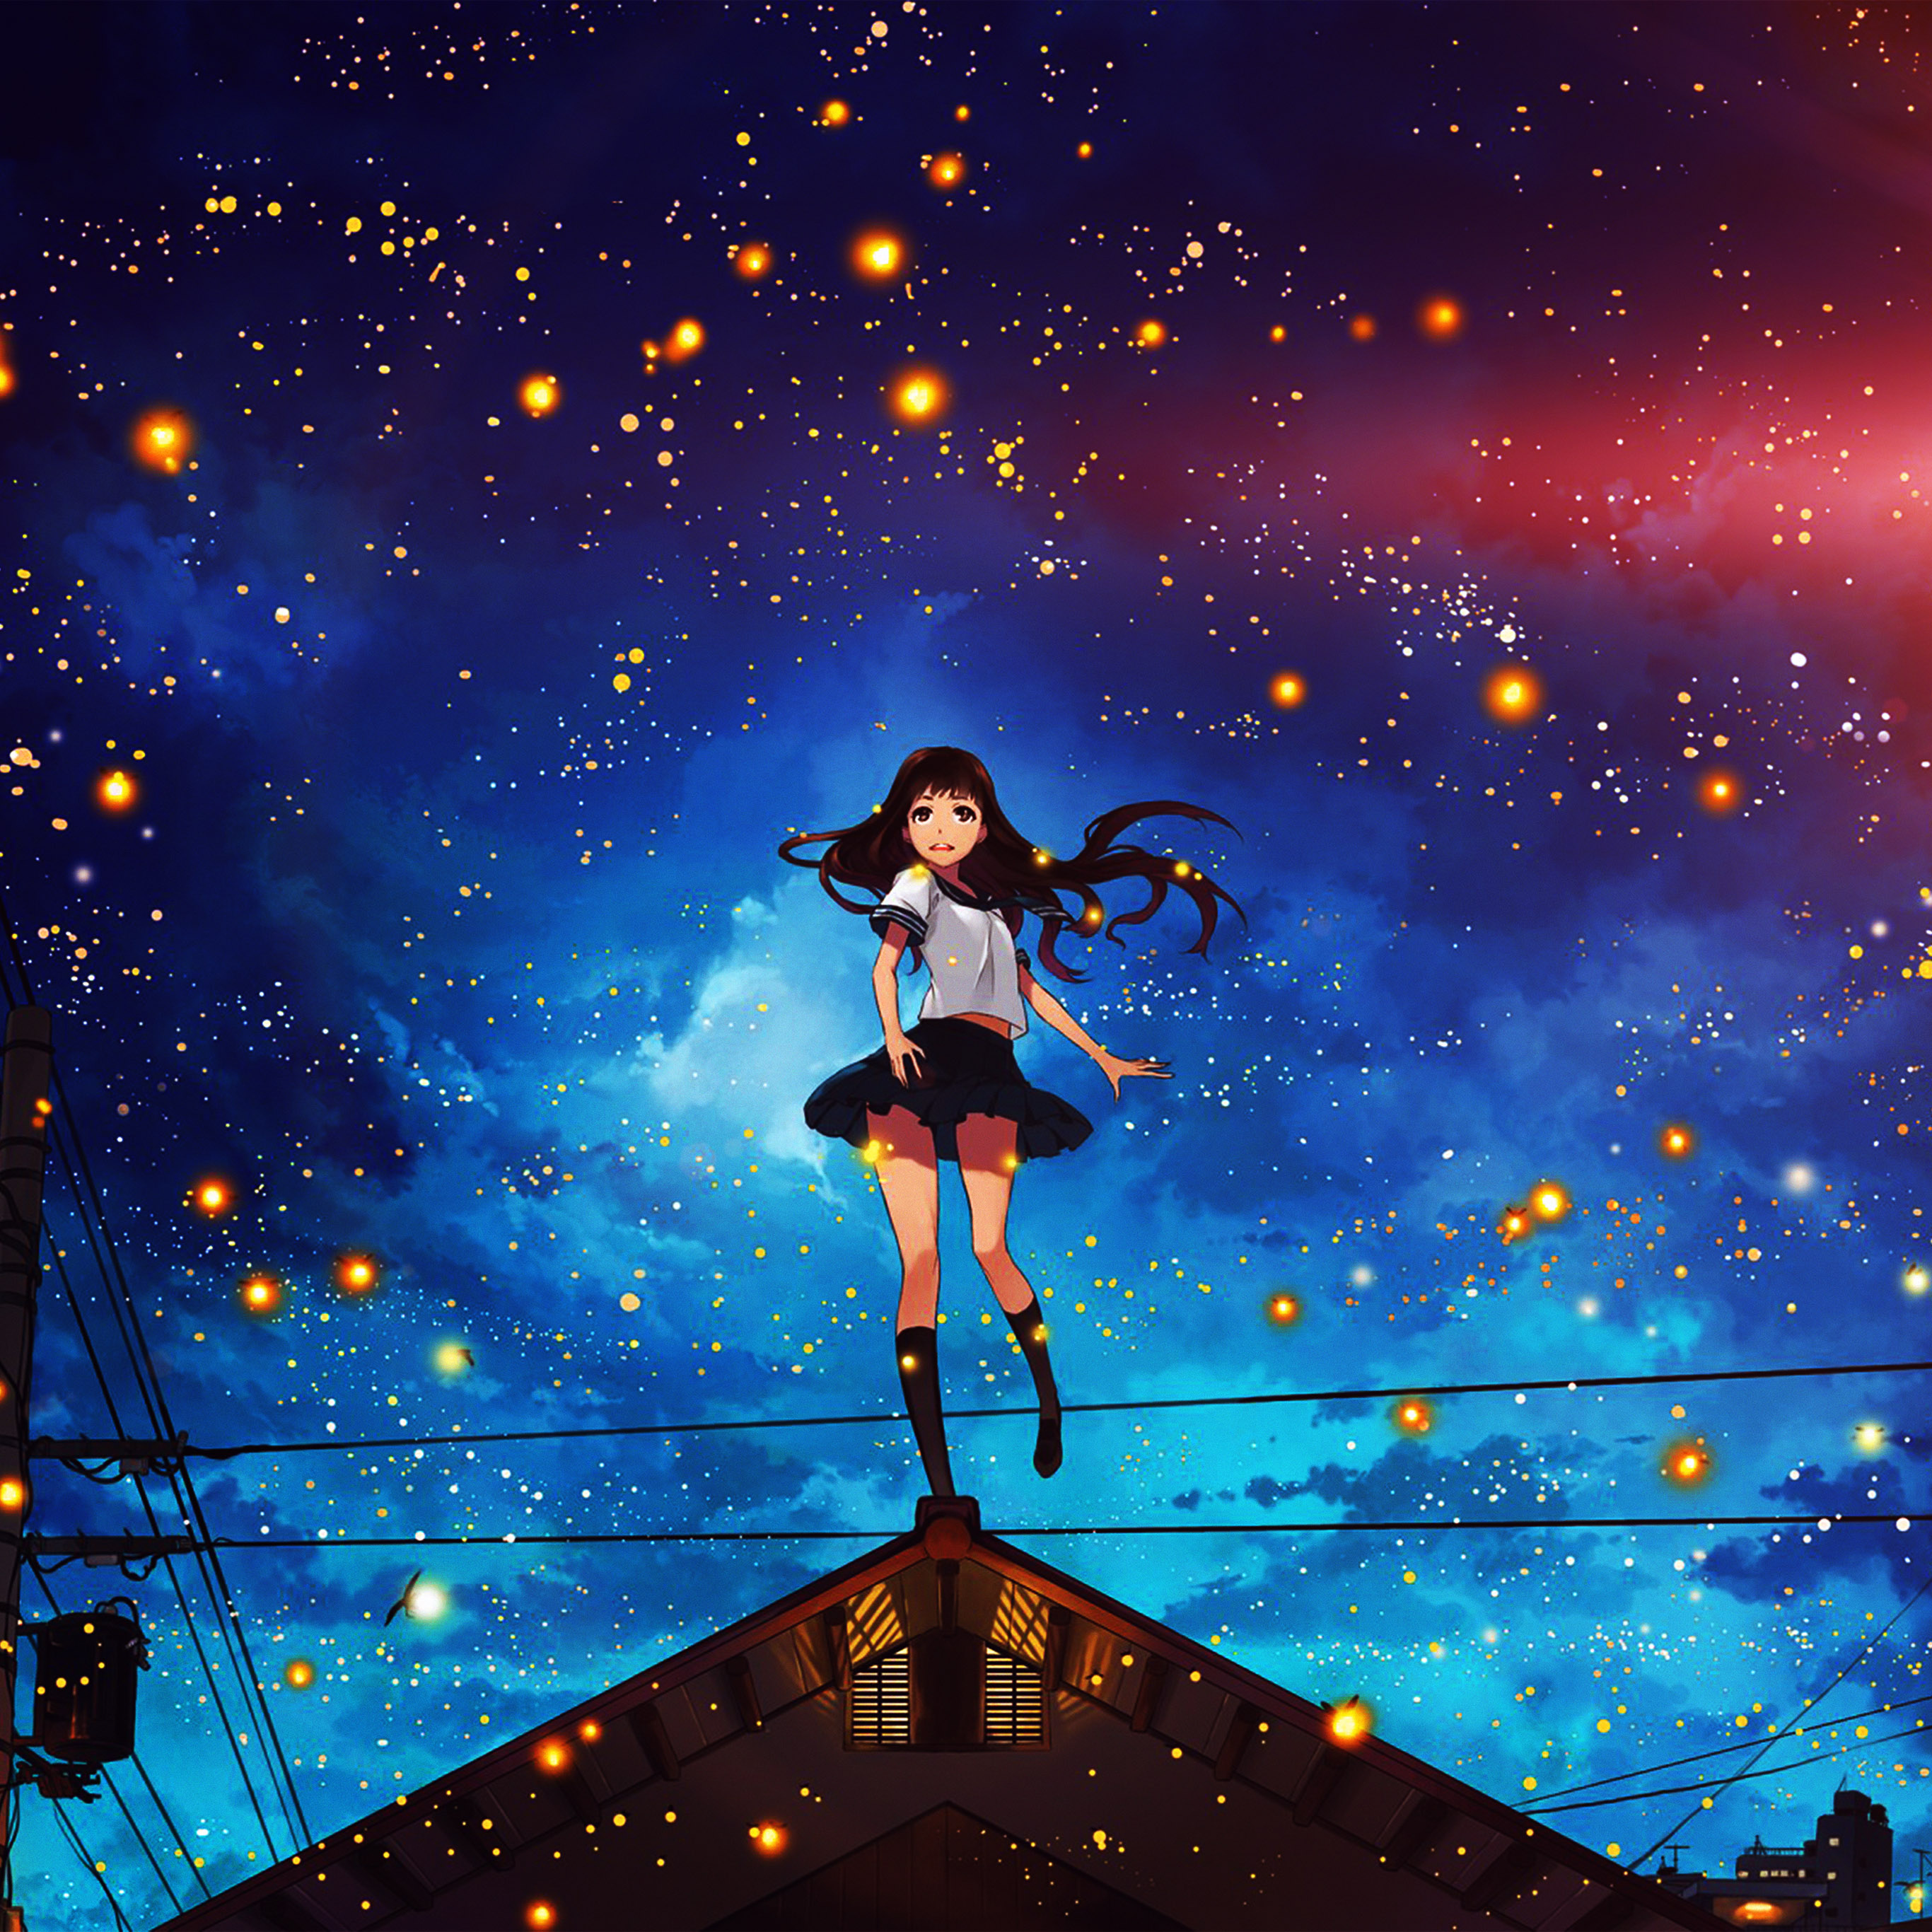 Girl Anime Star Space Night Illustration Art Flare Wallpaper